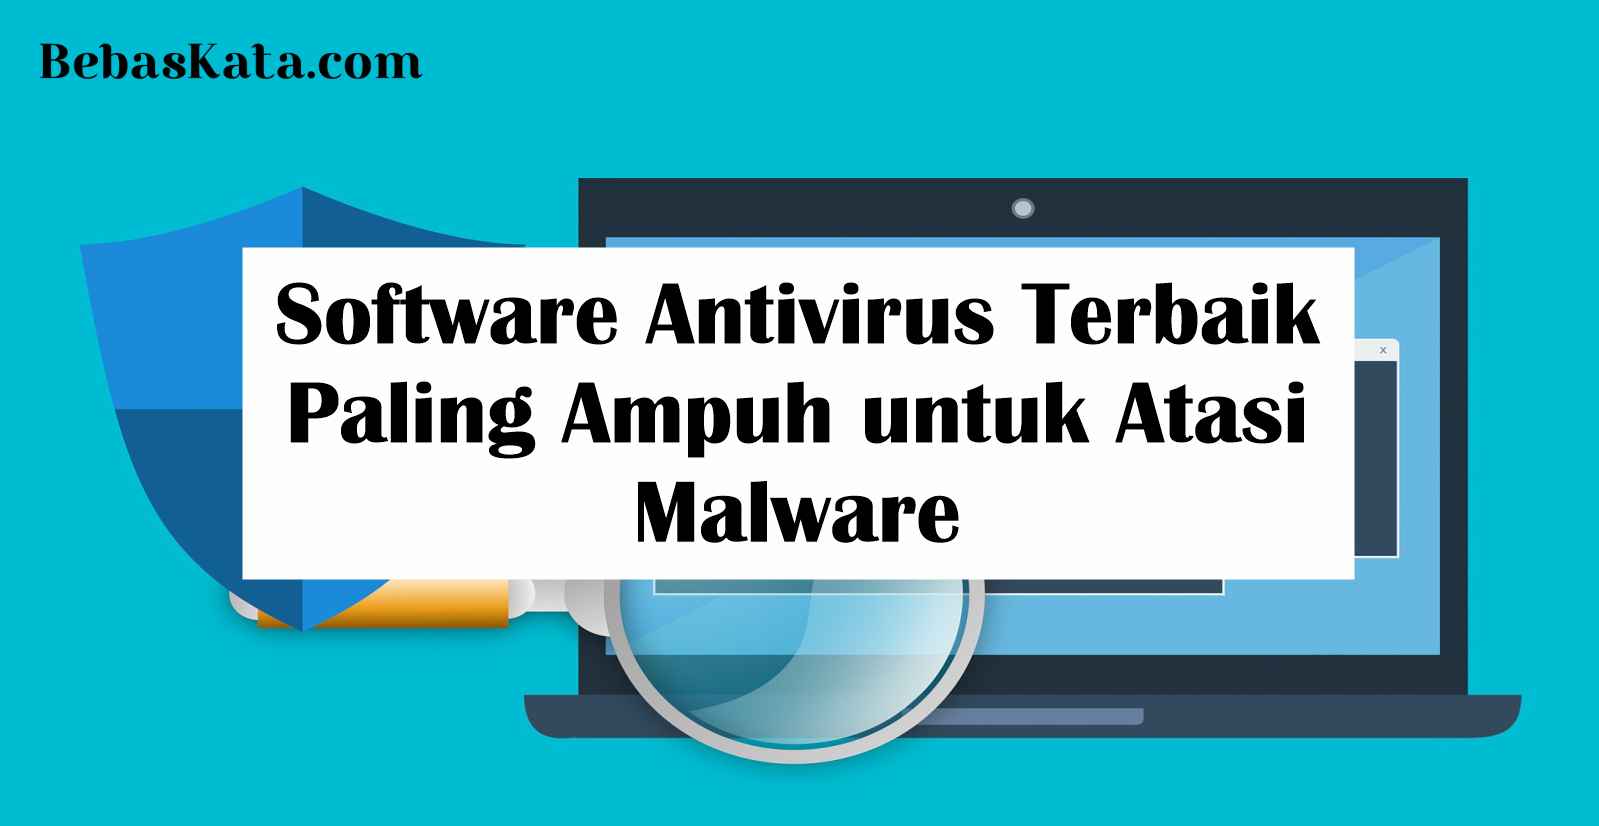 Software Antivirus Terbaik Paling Ampuh untuk Atasi Malware